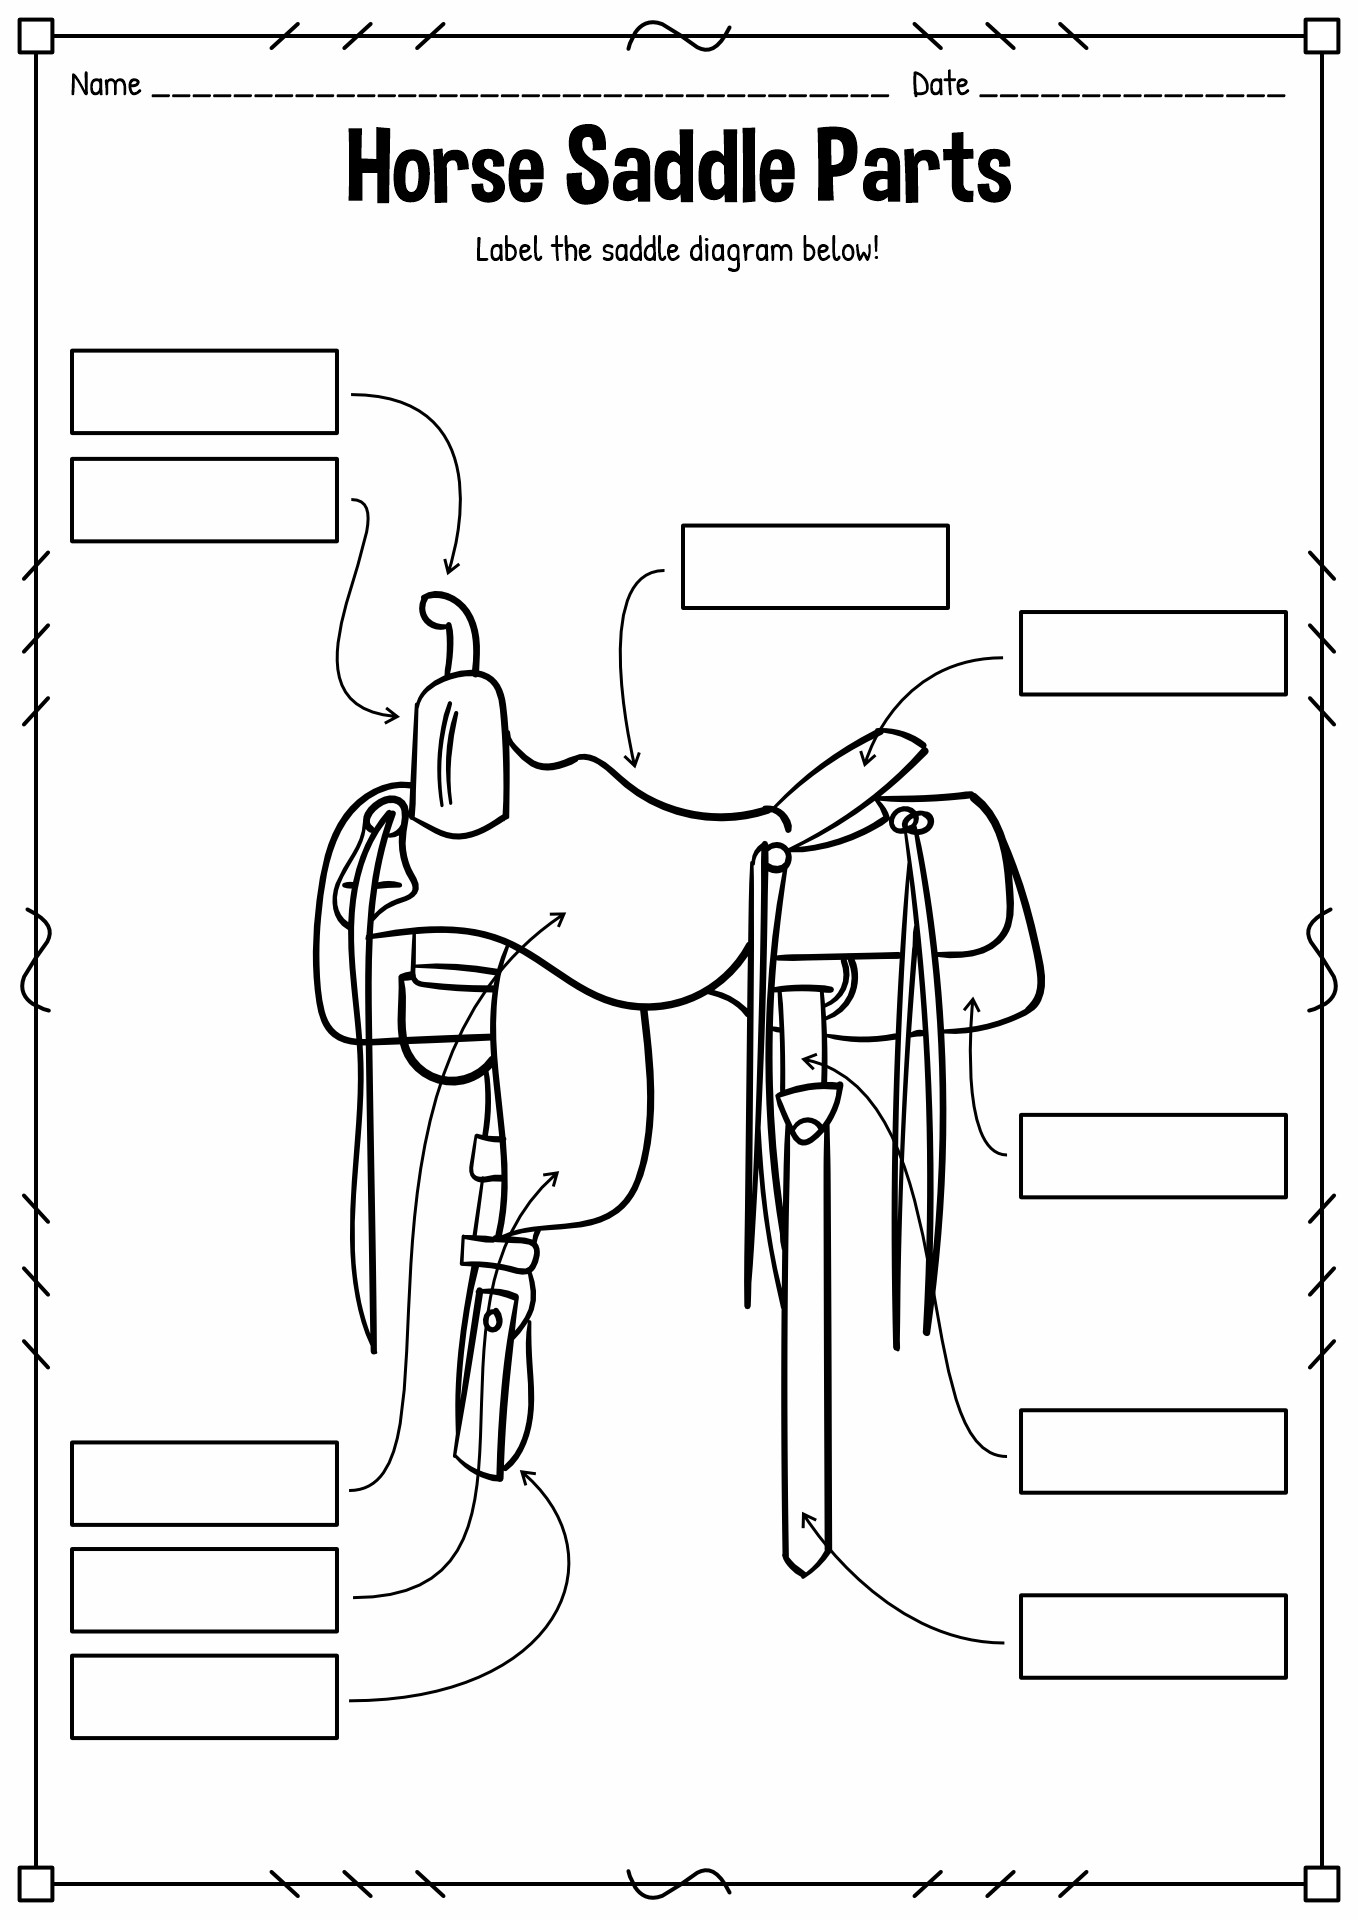 Horse Saddle Parts Worksheet